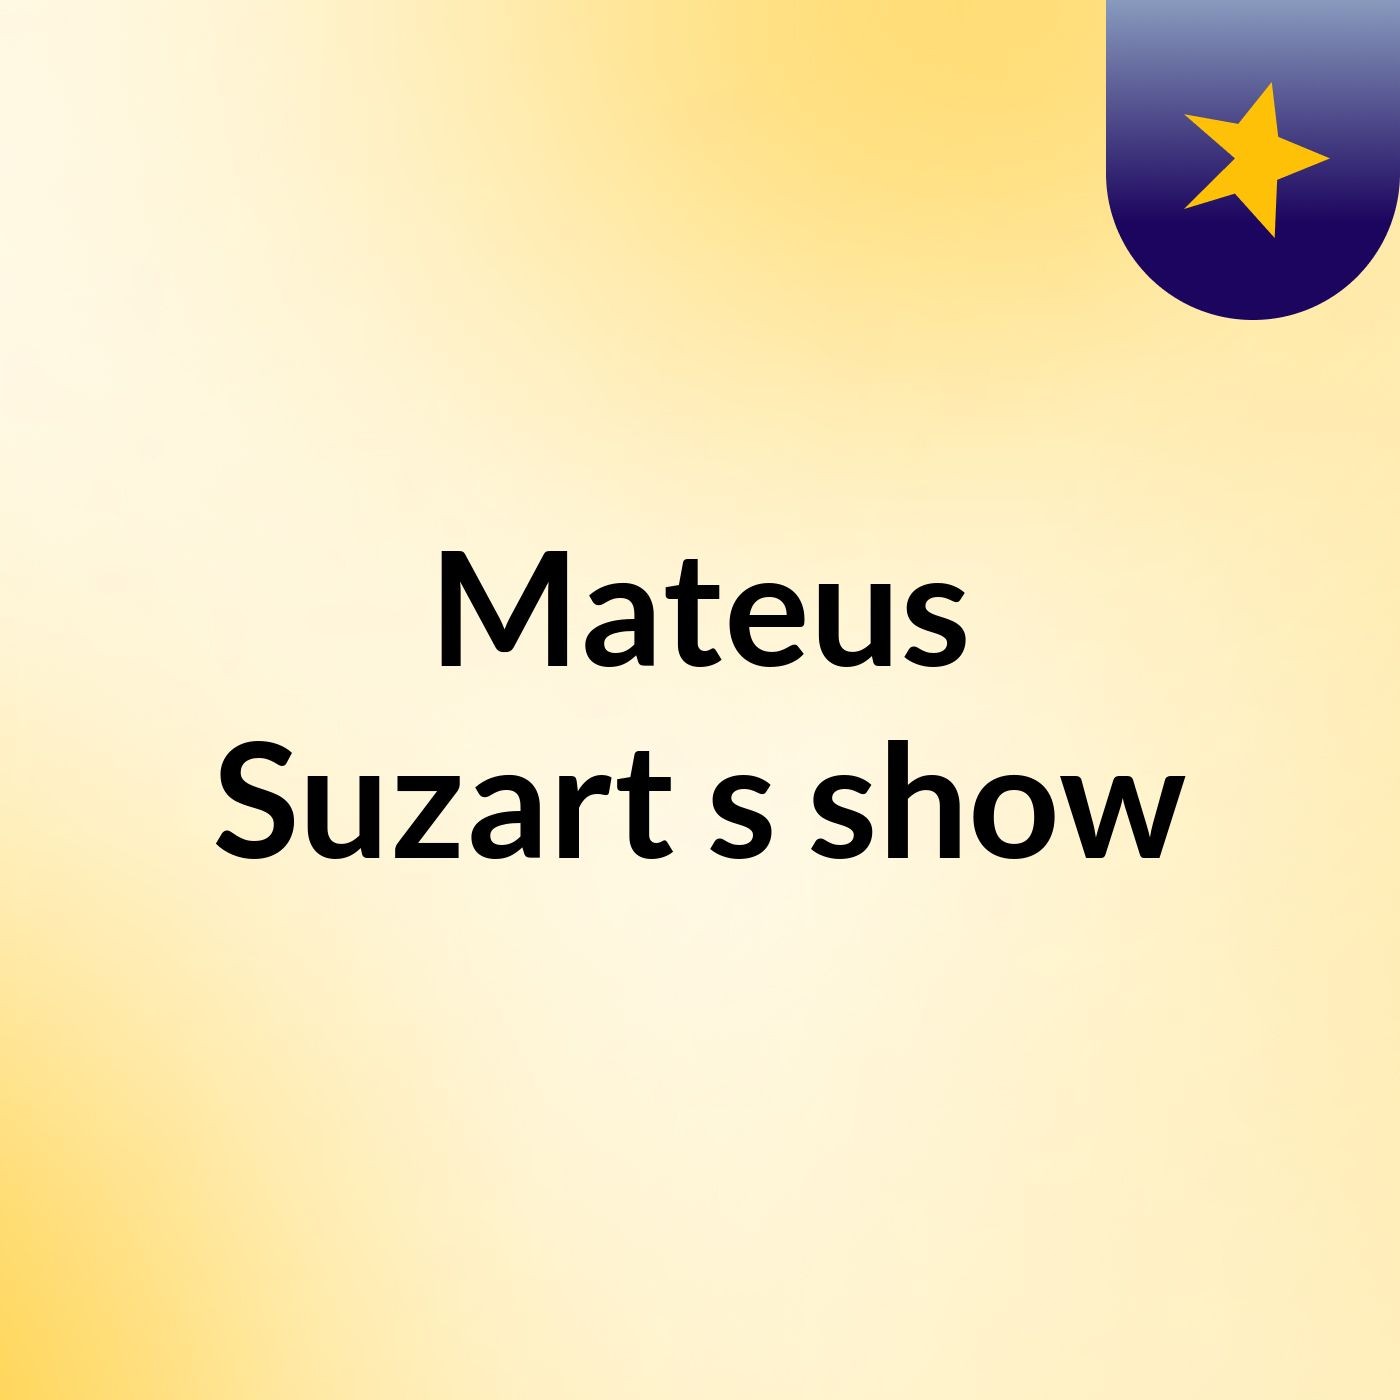 Mateus Suzart's show